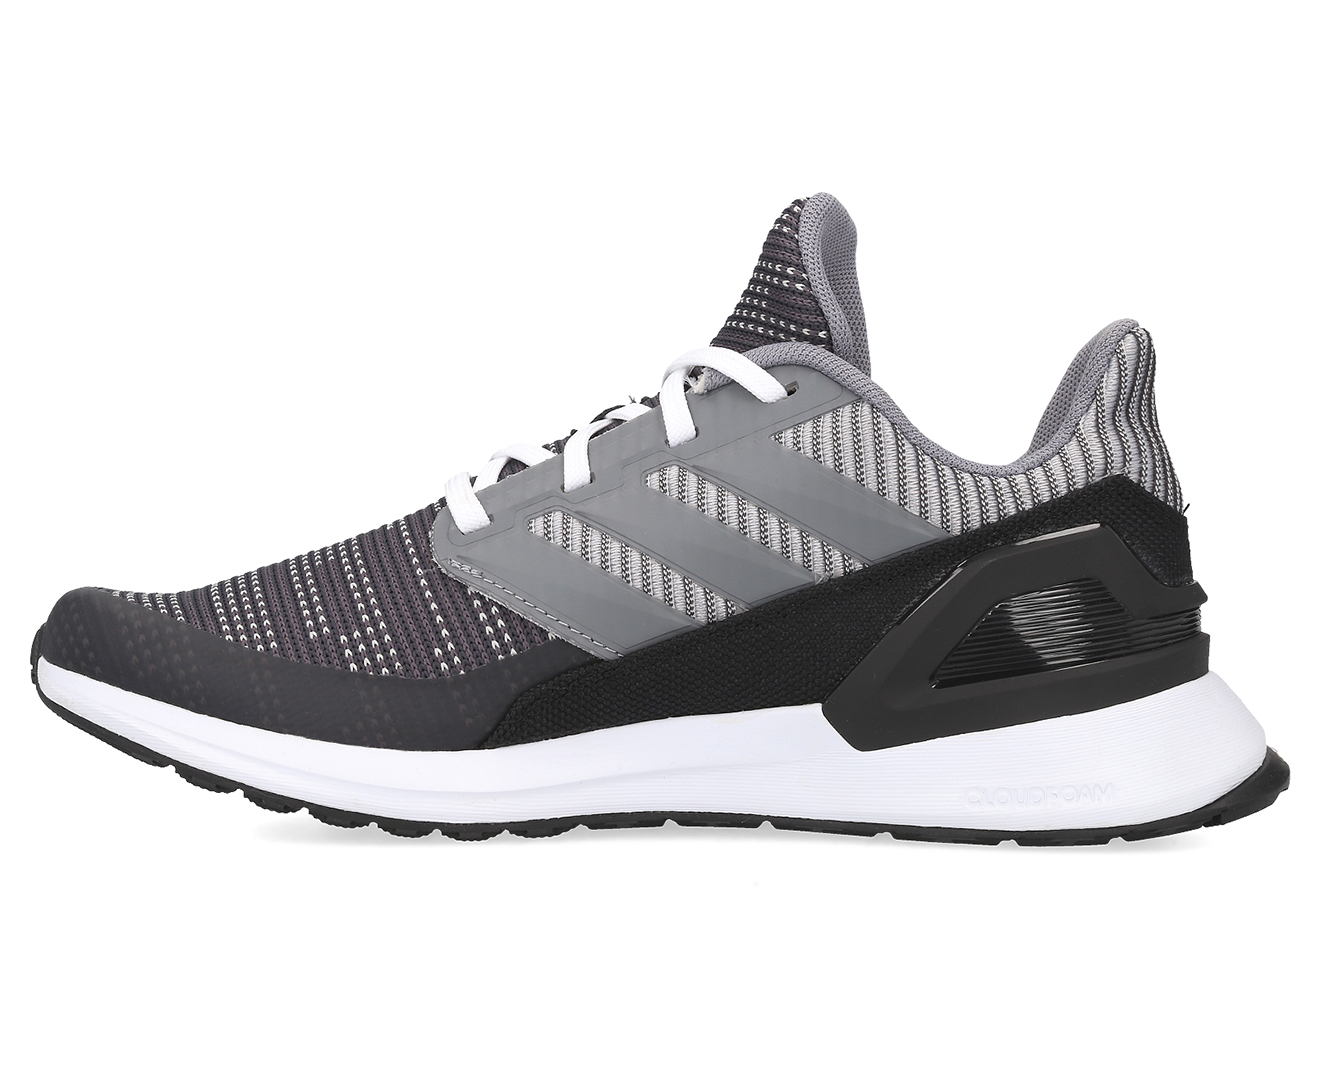 Adidas Boys' Rapidarun Knit Running Shoes - Carbon/Grey | Catch.com.au